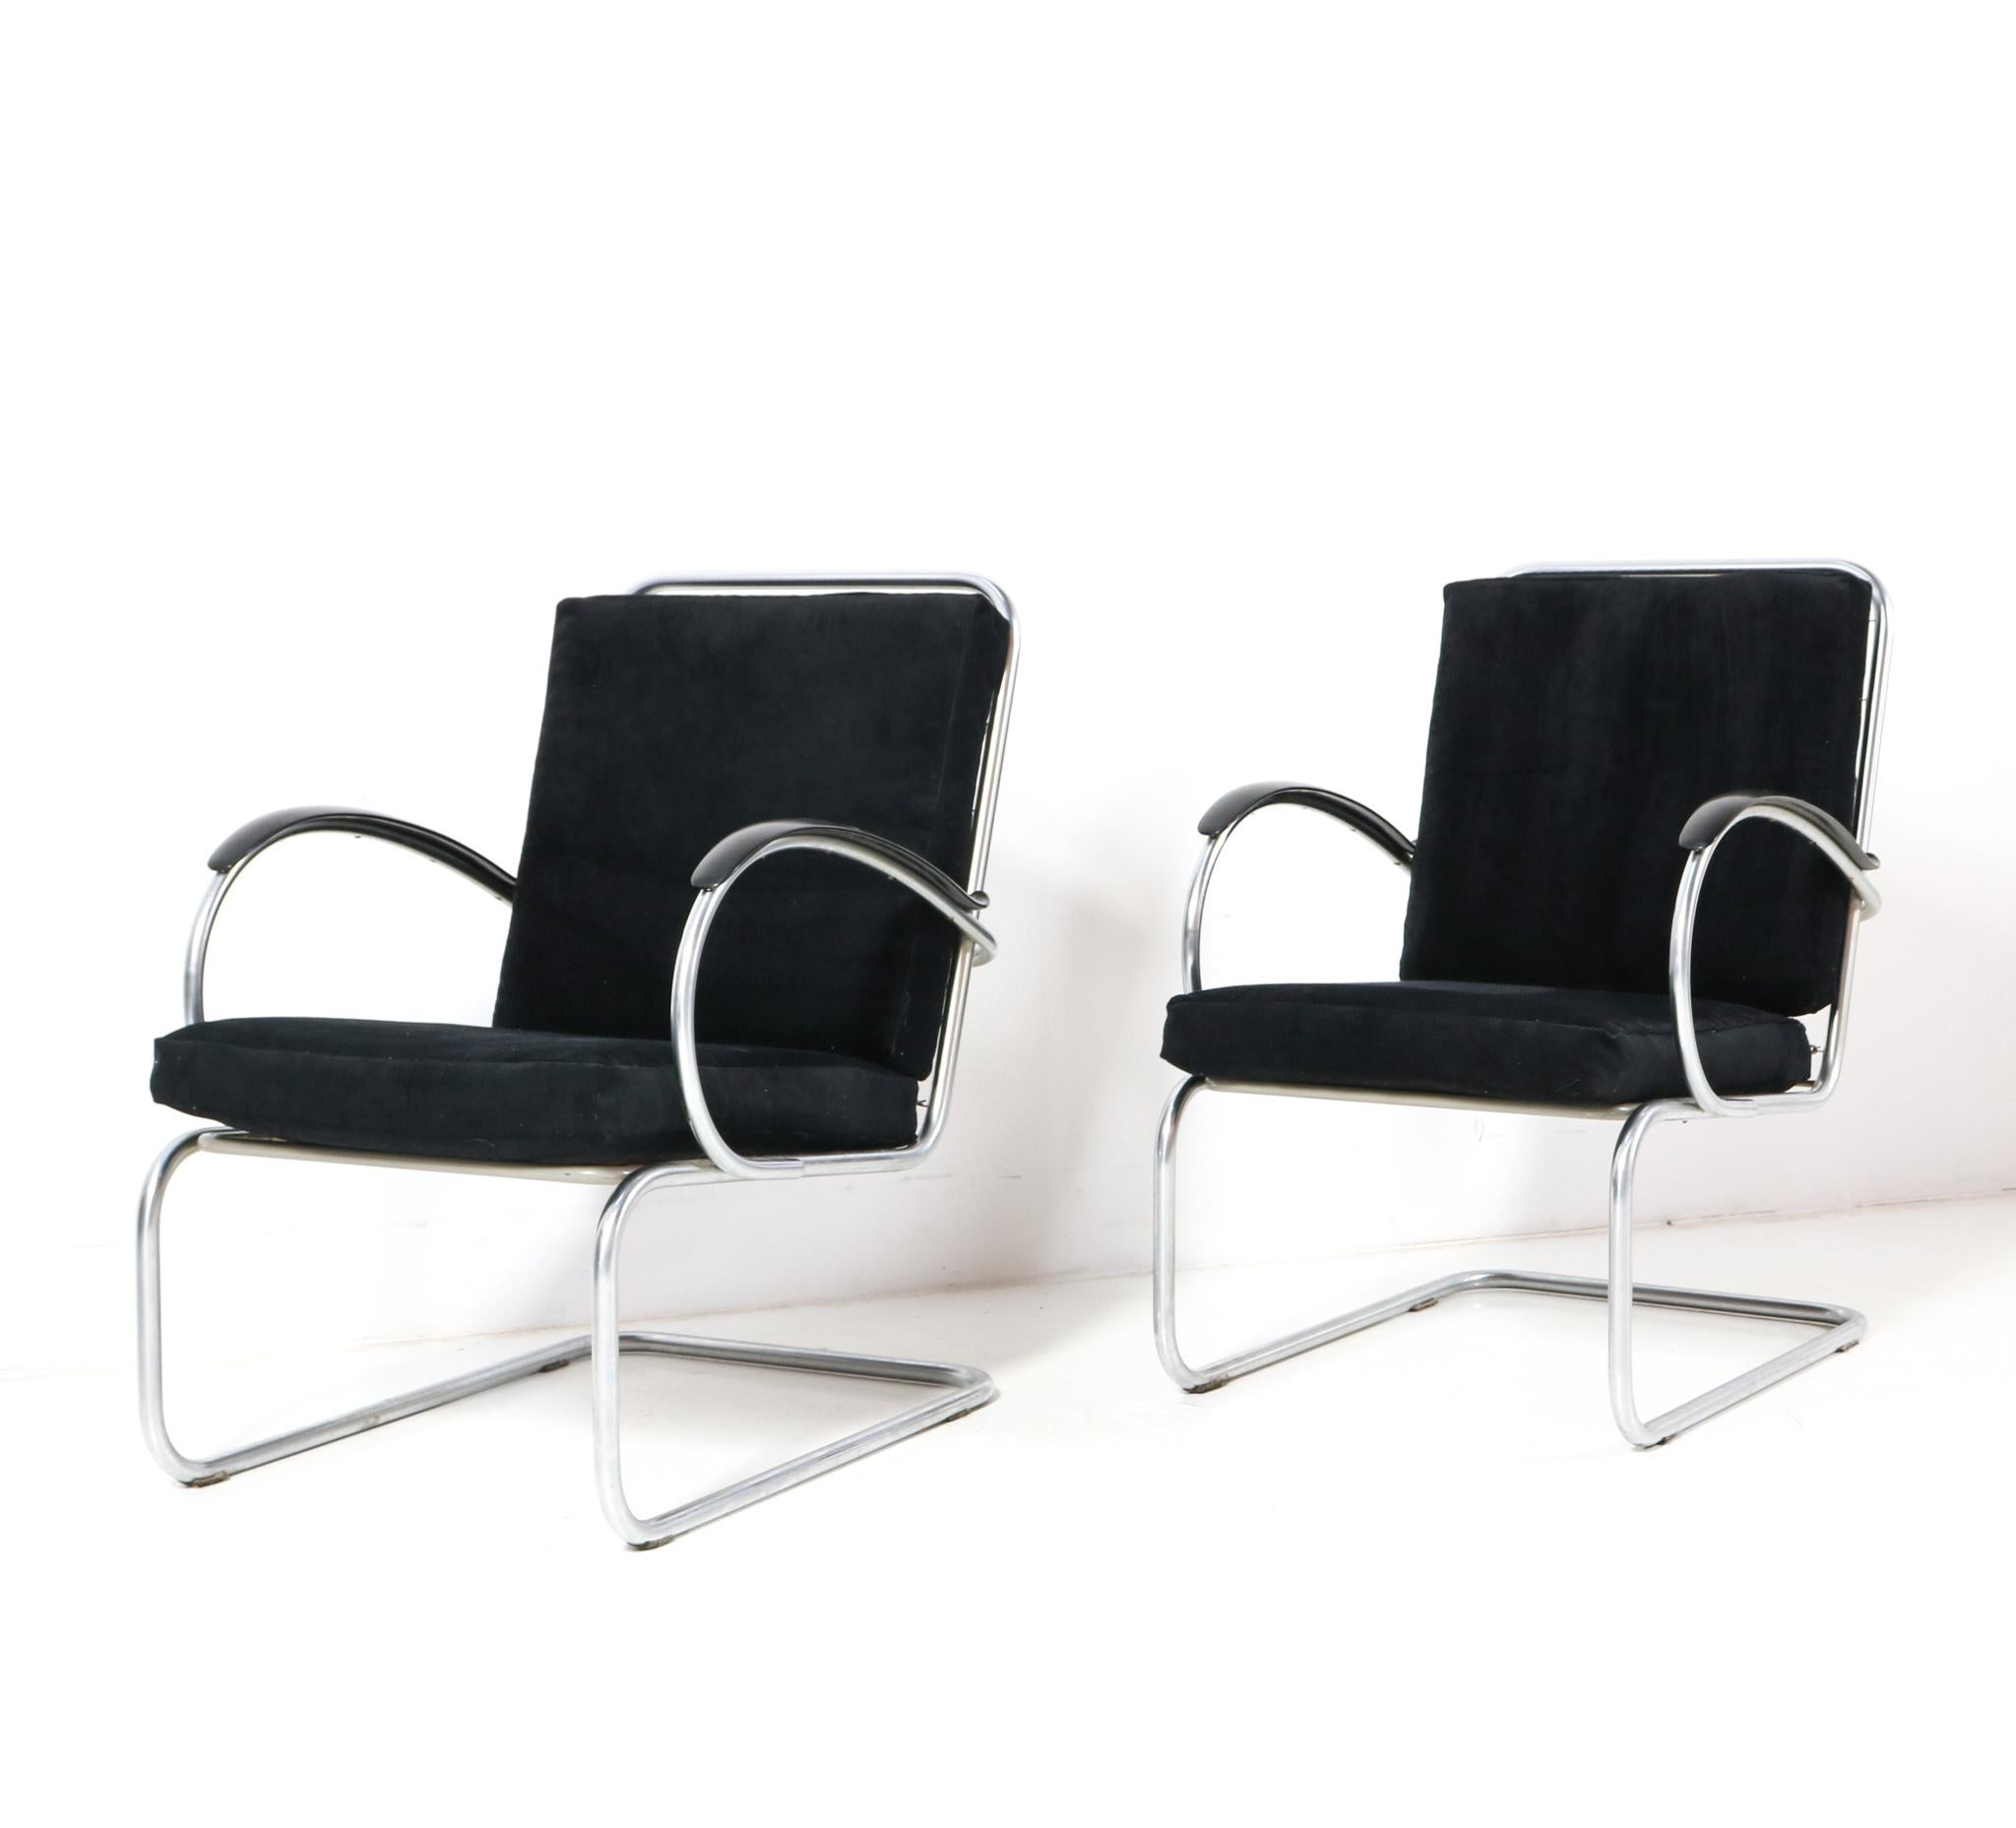 Magnifique et très difficile à trouver paire de chaises longues Art Déco Bauhaus Modèle 409.
Design de Willem H. Gispen pour Gispen.
Un design néerlandais saisissant des années 1930.
Piétements cantilever originaux en tube d'acier chromé avec